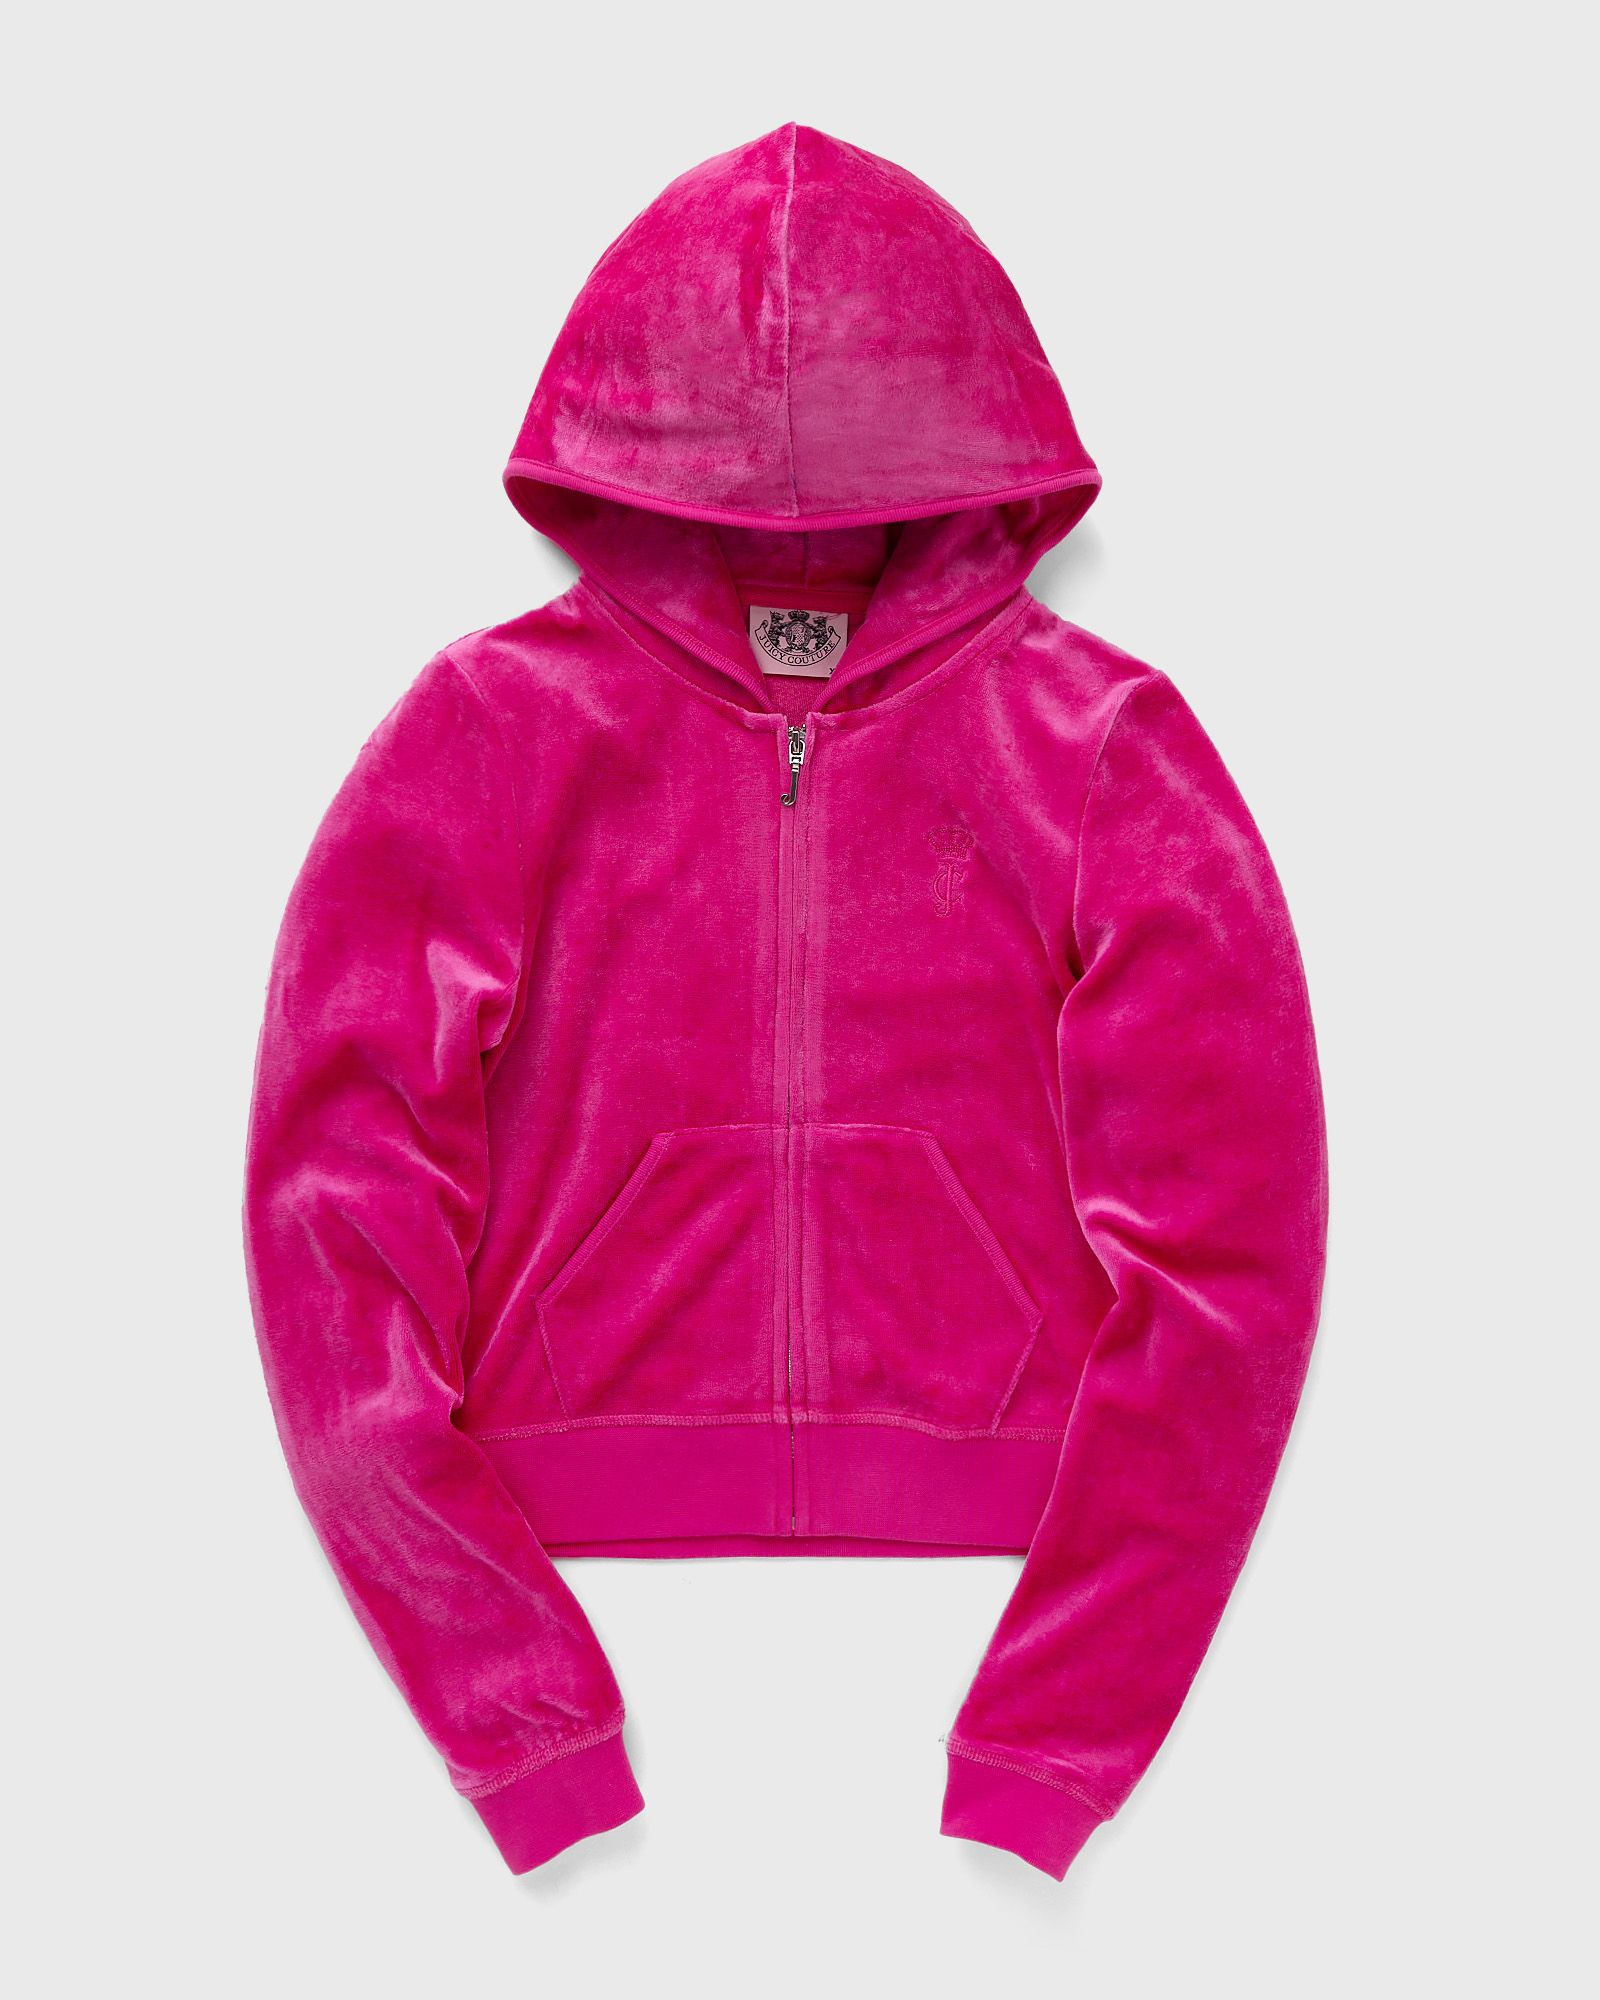 Juicy Couture - wmns robyn hoodie women hoodies|zippers pink in größe:xs